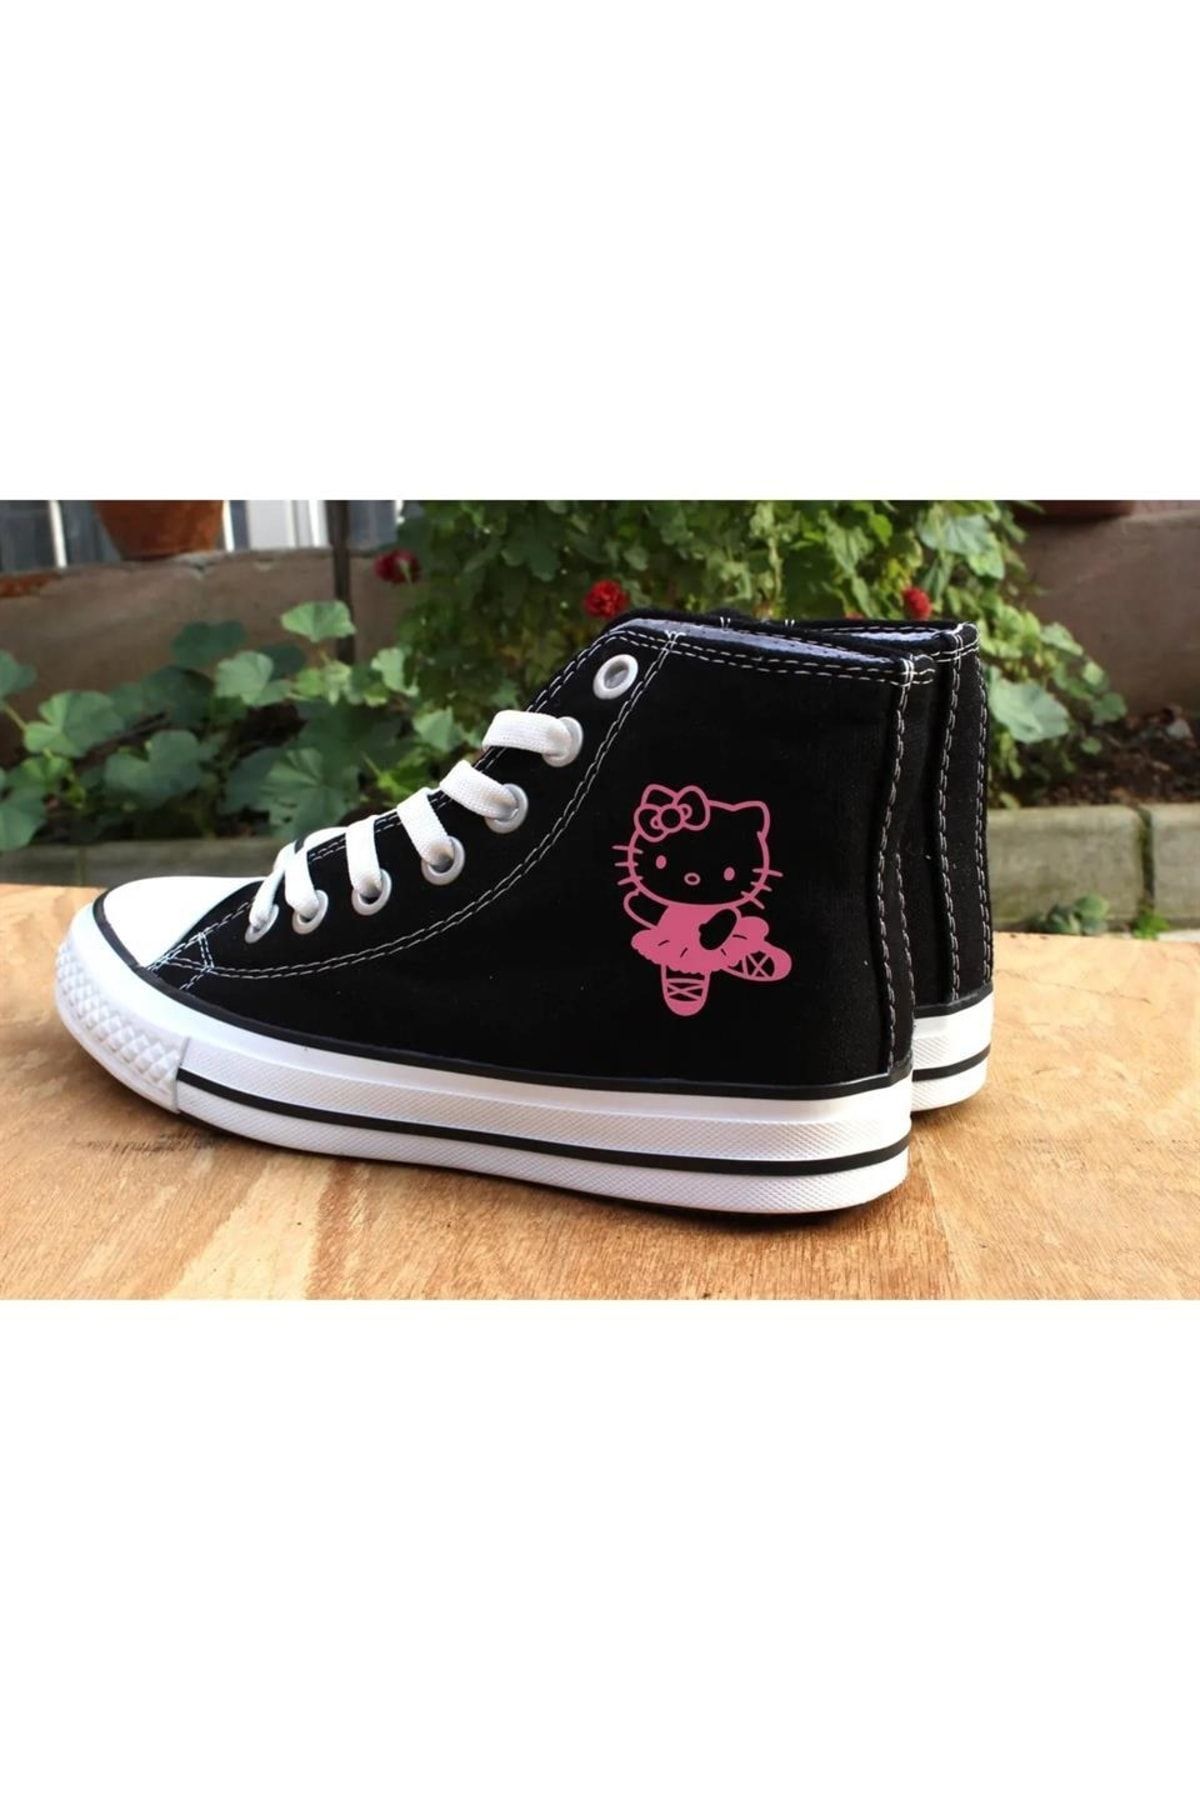 Gofeel Pink Hello Kitty Kanvas Chuck Taylor Baskılı Unisex Boğazlı Bağcıklı Ayakkabı